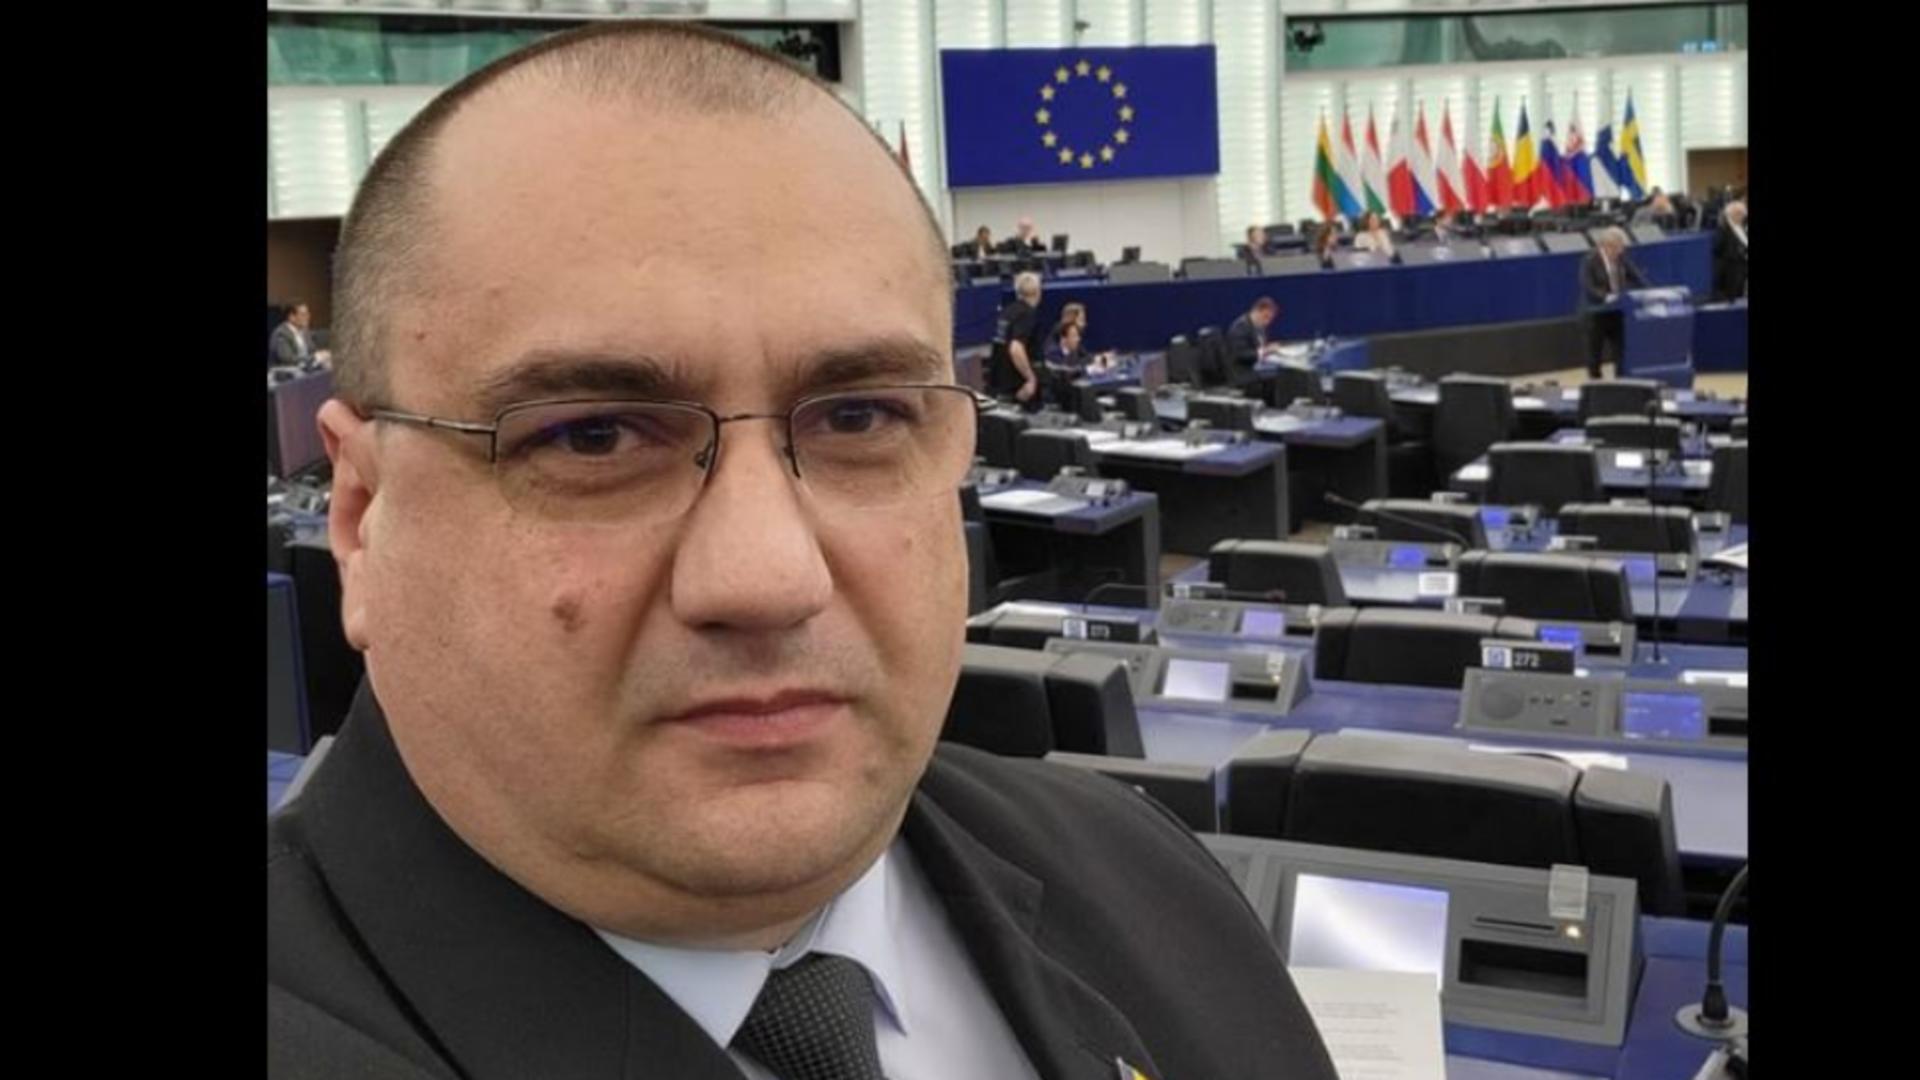 Terheș candidează din partea AUR pentru un nou mandat în Parlamentul European. Foto/Arhivă